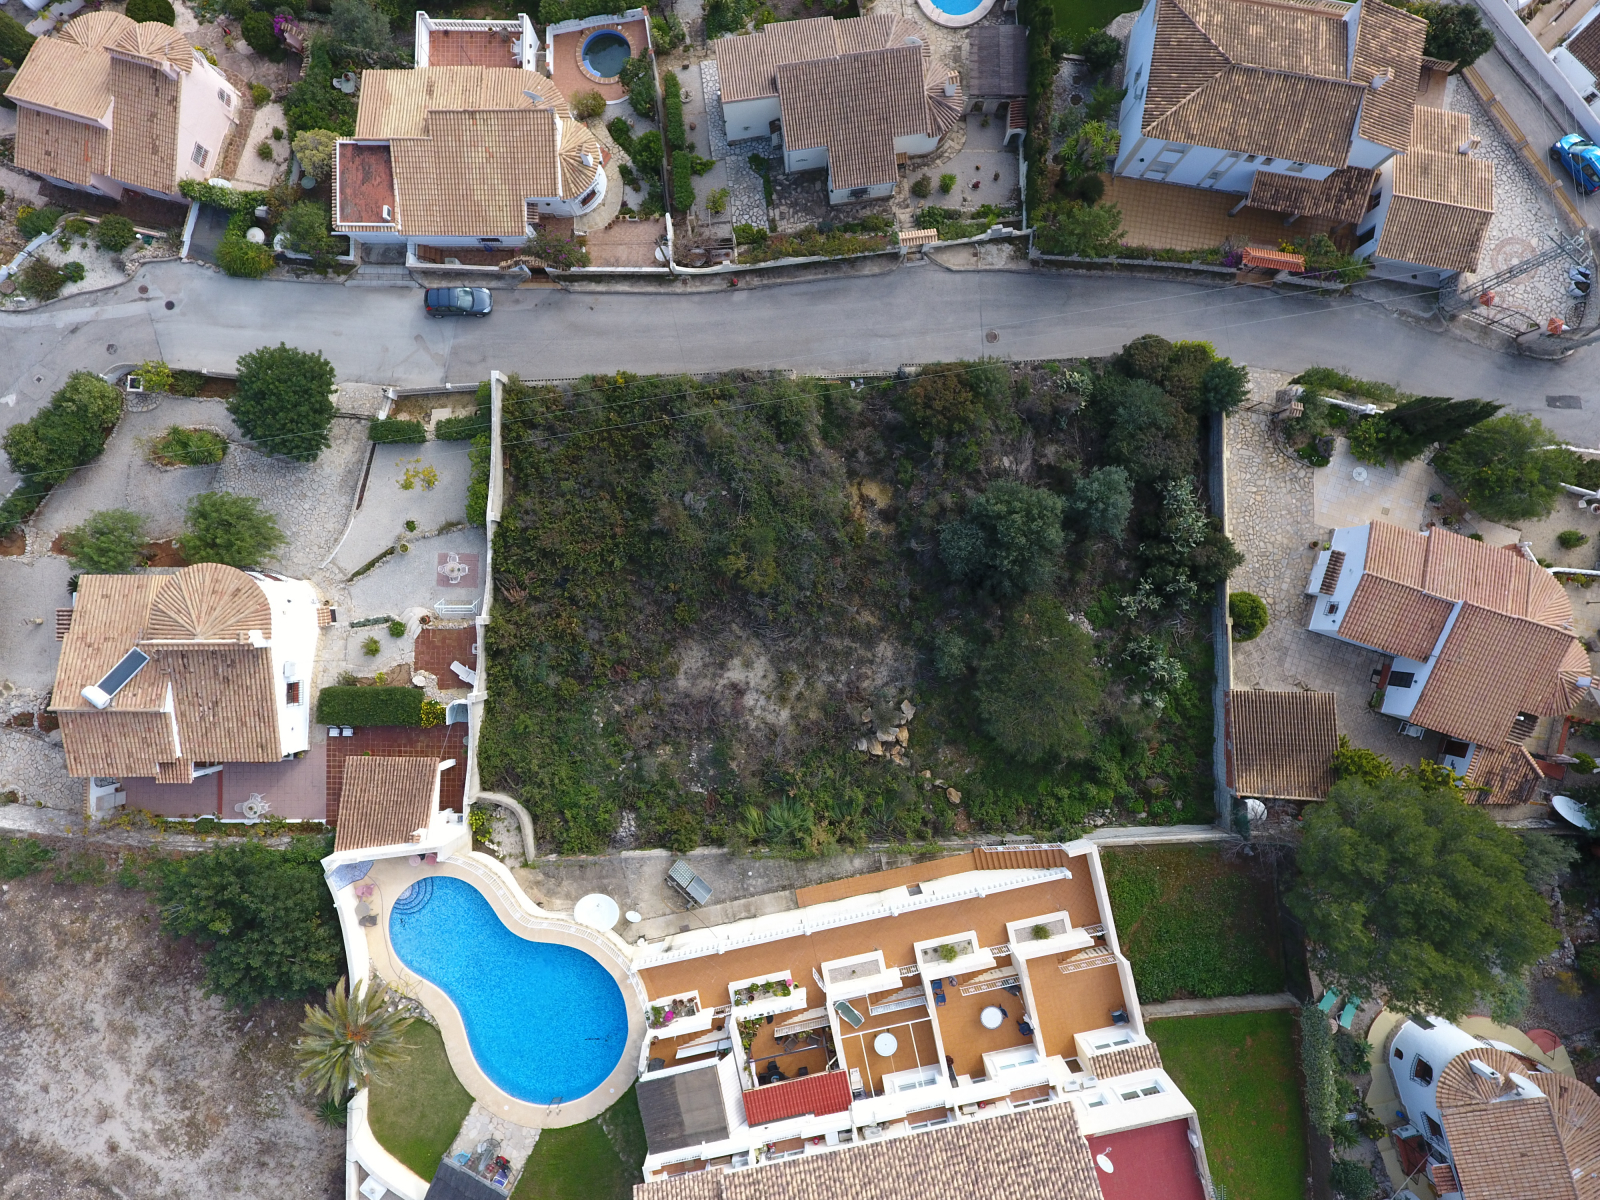 Terreno edificable para su Villa Soñada en zona urbana con los beneficios del campo.